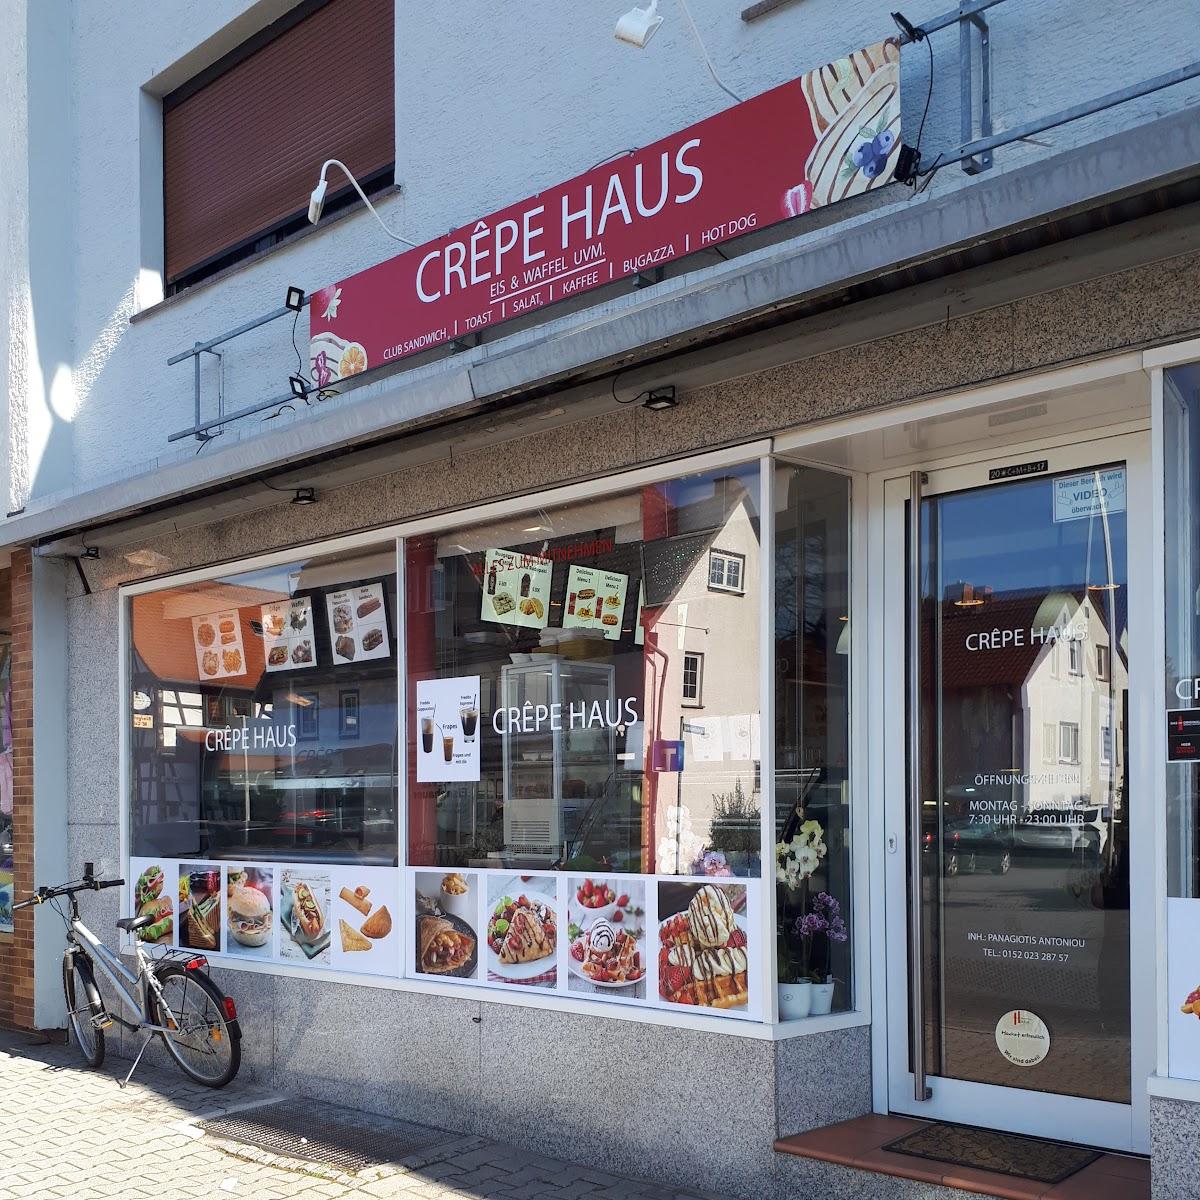 Restaurant "Crêpe Haus" in Höchst im Odenwald